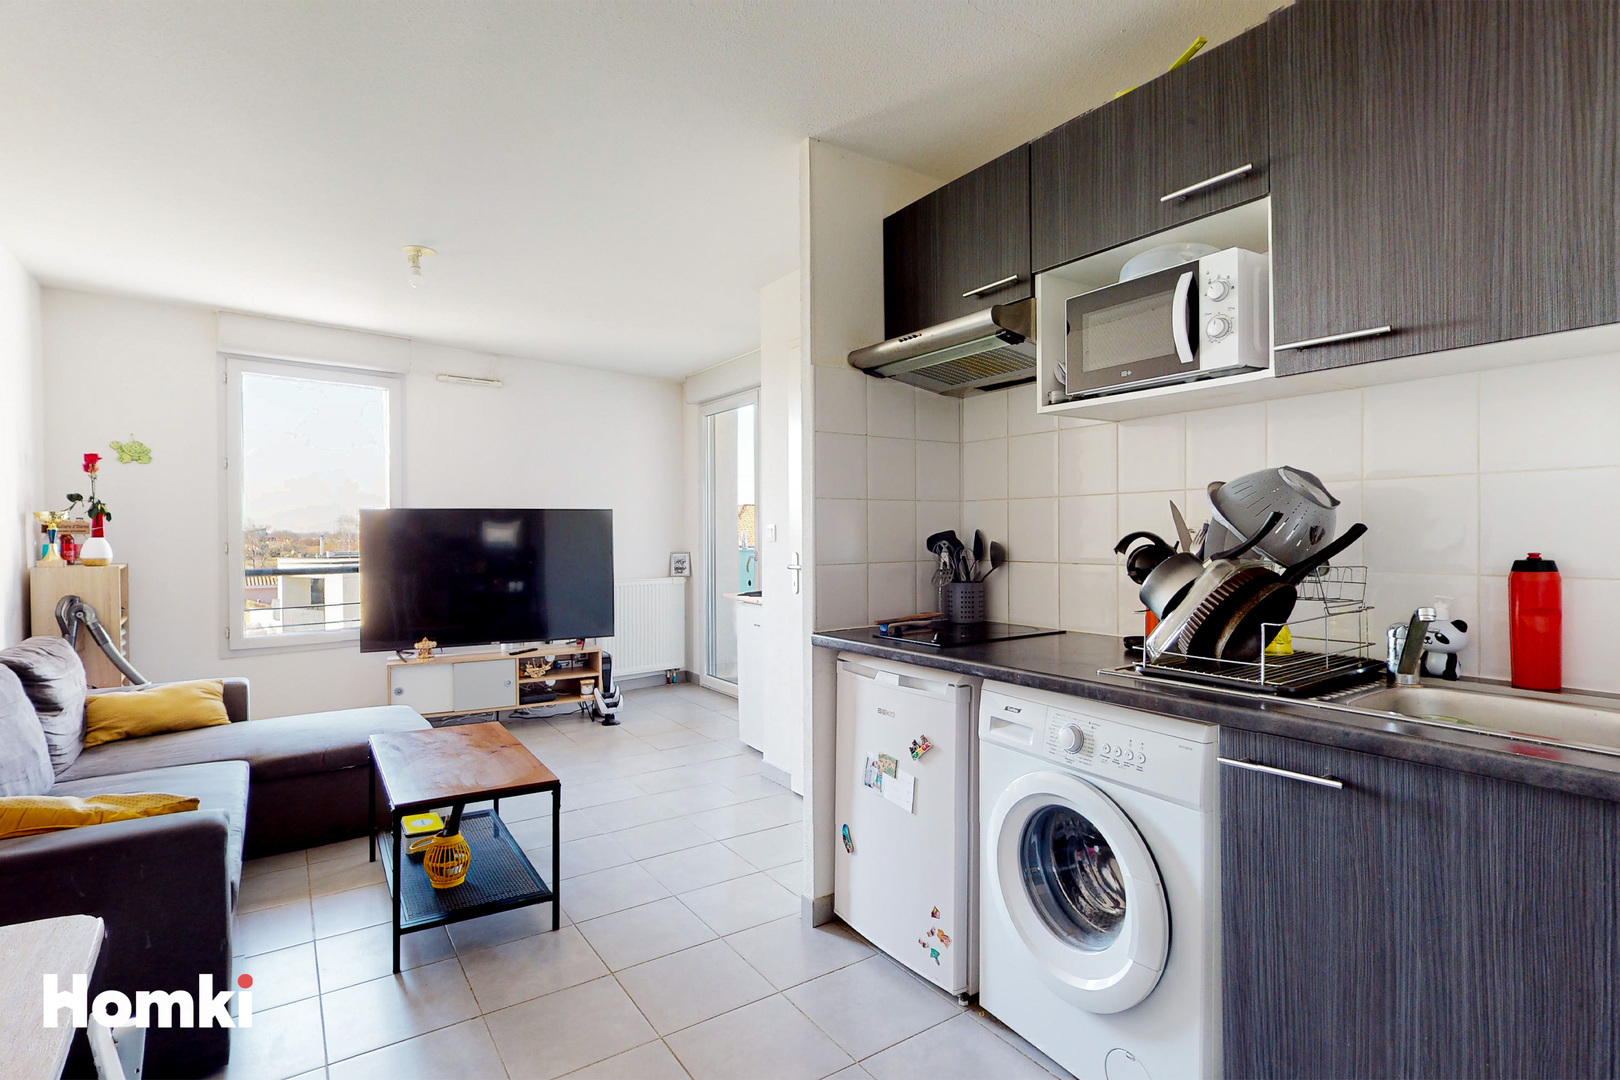 Homki - Vente Appartement  de 42.0 m² à Toulouse 31200